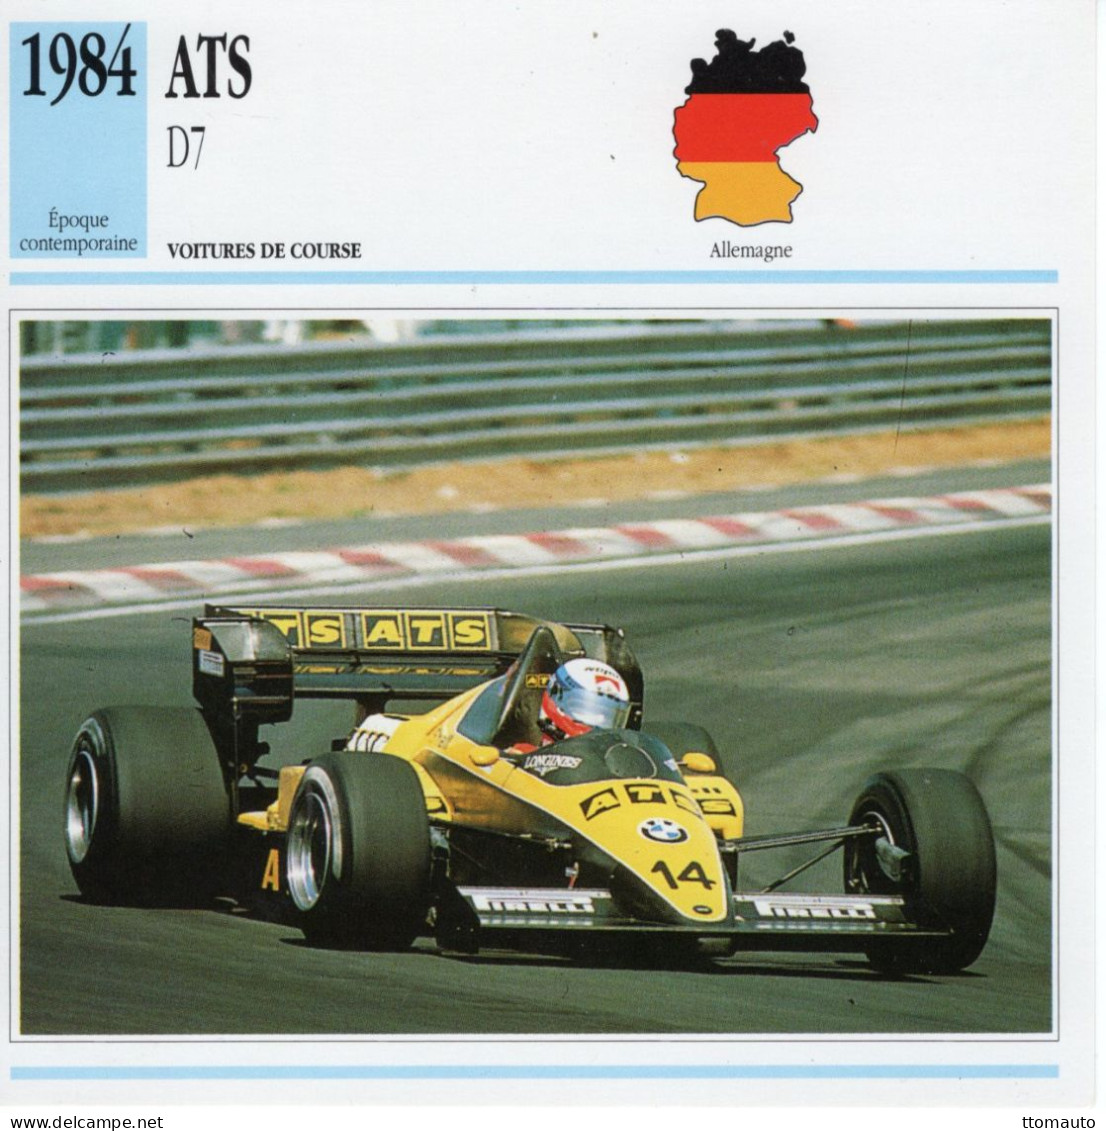 Fiche  -  Voiture De Course F1  -  ATS D7/01  (1984)  - Pilote: Manfred Winkelhock -  Carte De Collection - Voitures